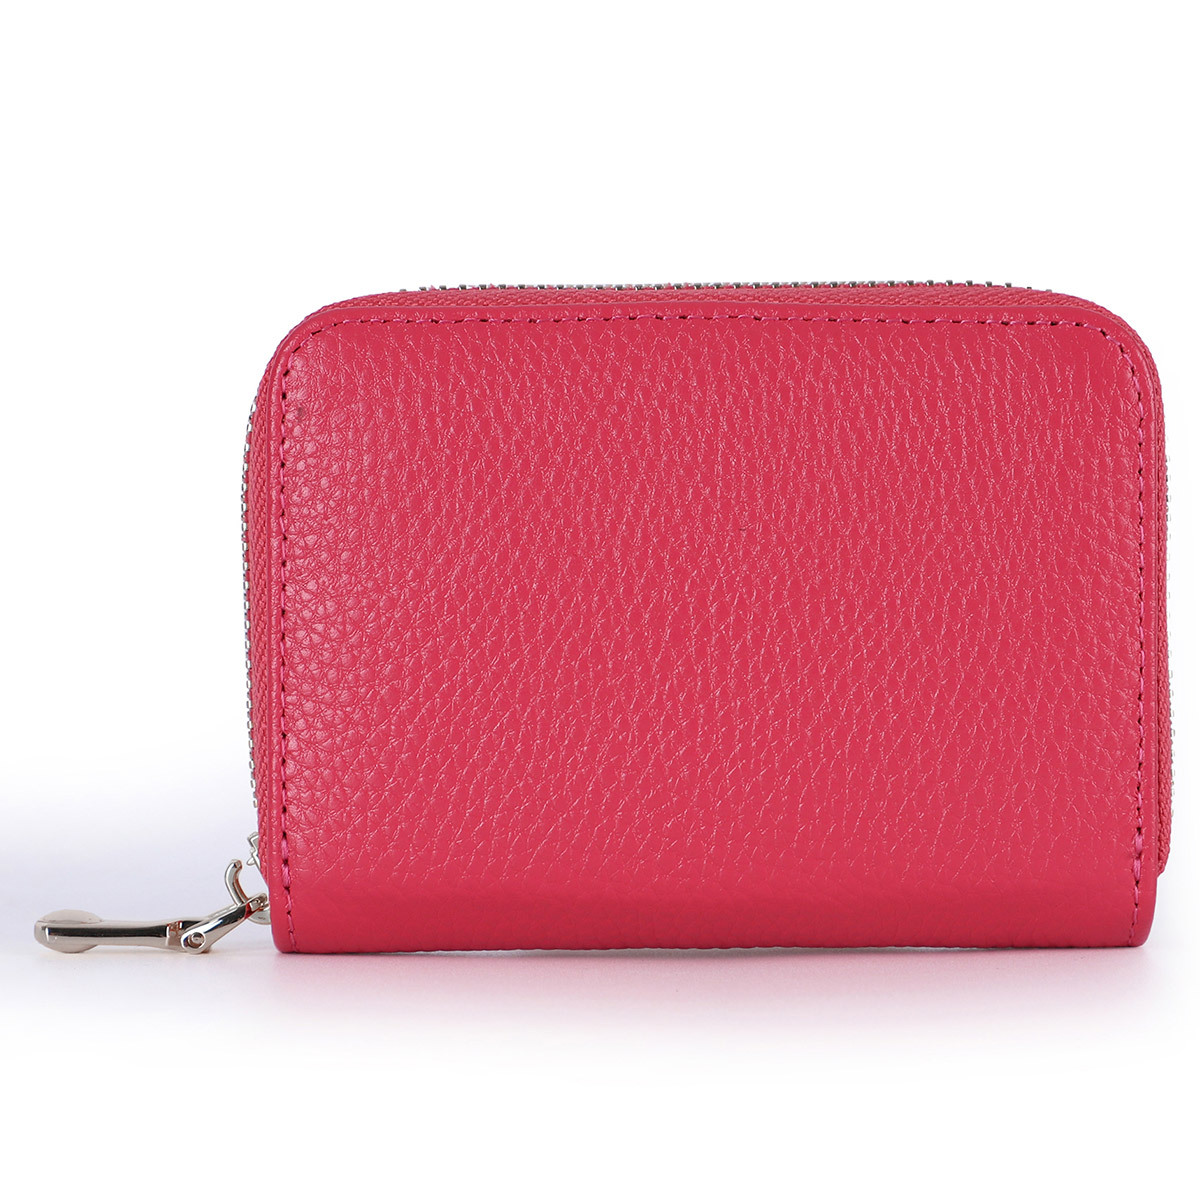 ミニ財布 コインケース カードケース 大容量 メンズ レディース 本革 ピンク